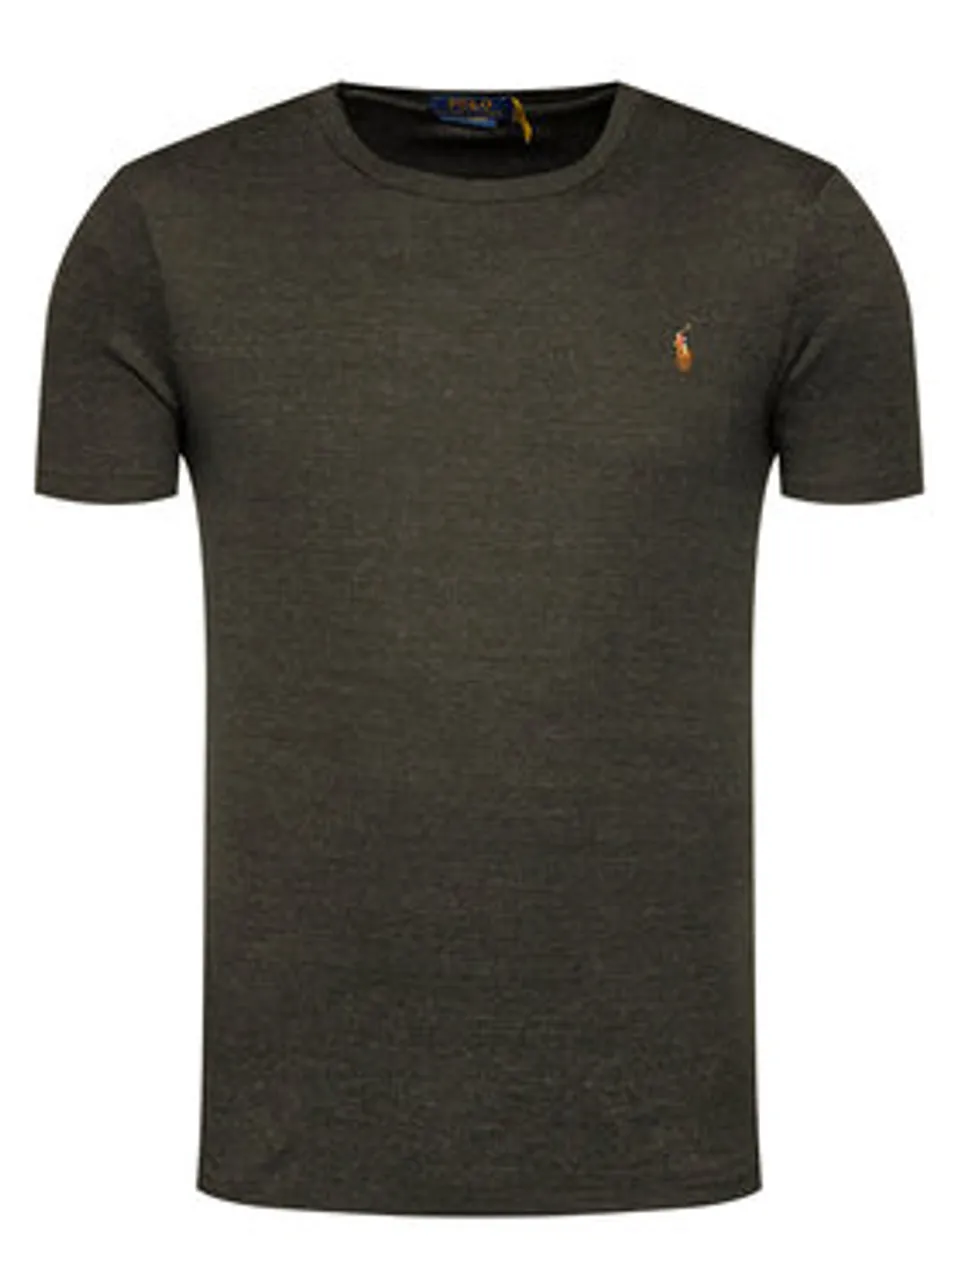 Polo Ralph Lauren T-Shirt Tsh 710740727032 Grau Slim Fit